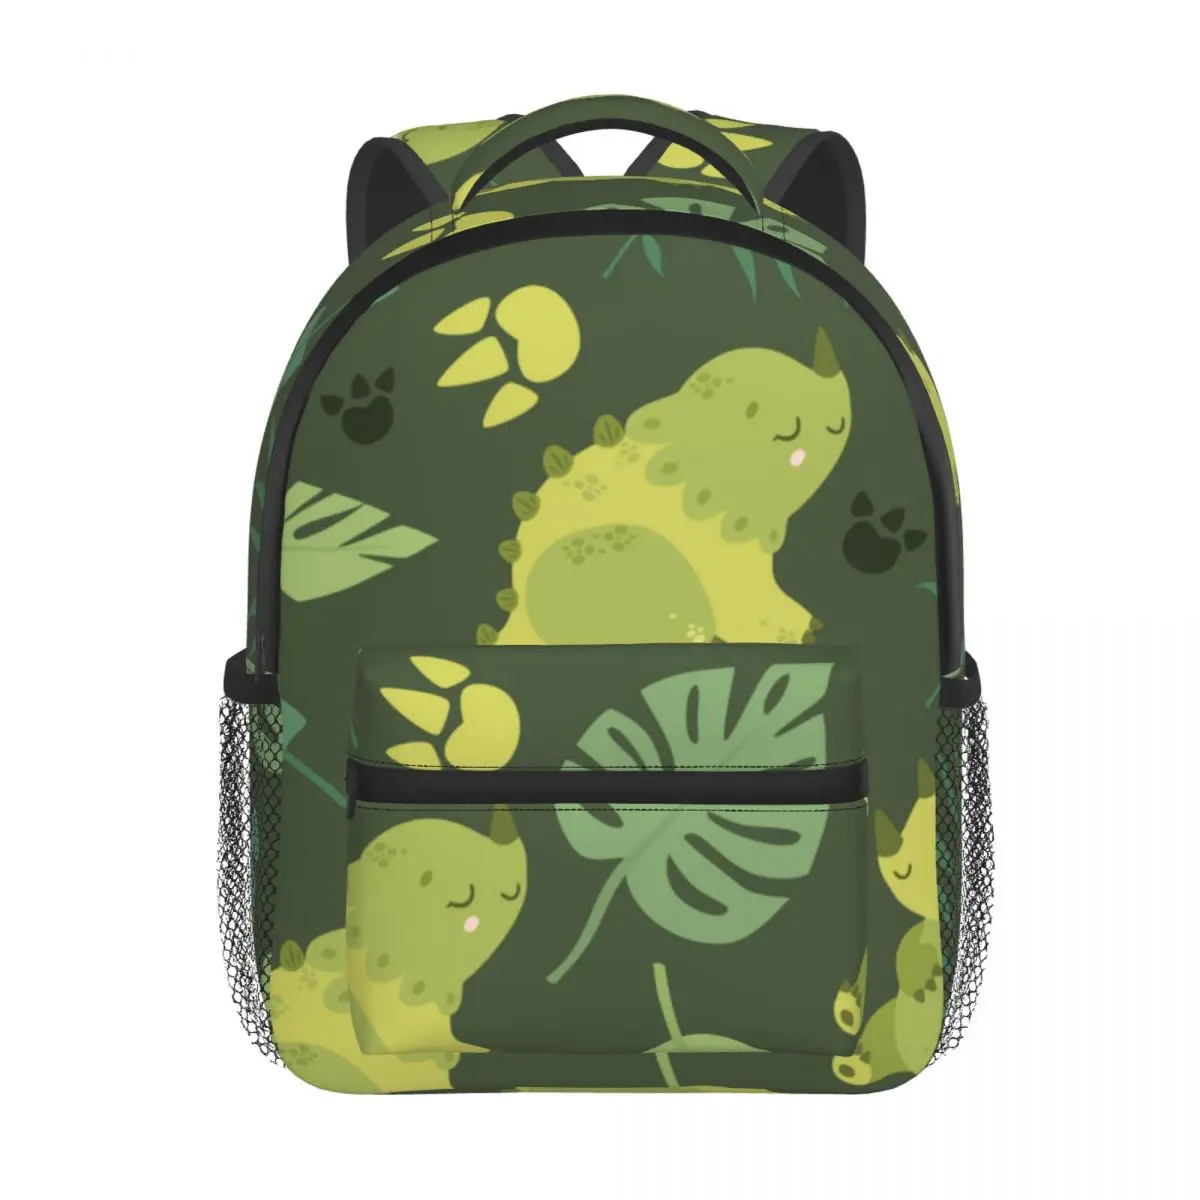 Exotic Dinosaurs Kids Backpack Toddler School Bag Kindergarten Mochila for Boys Girls 2-5 Years